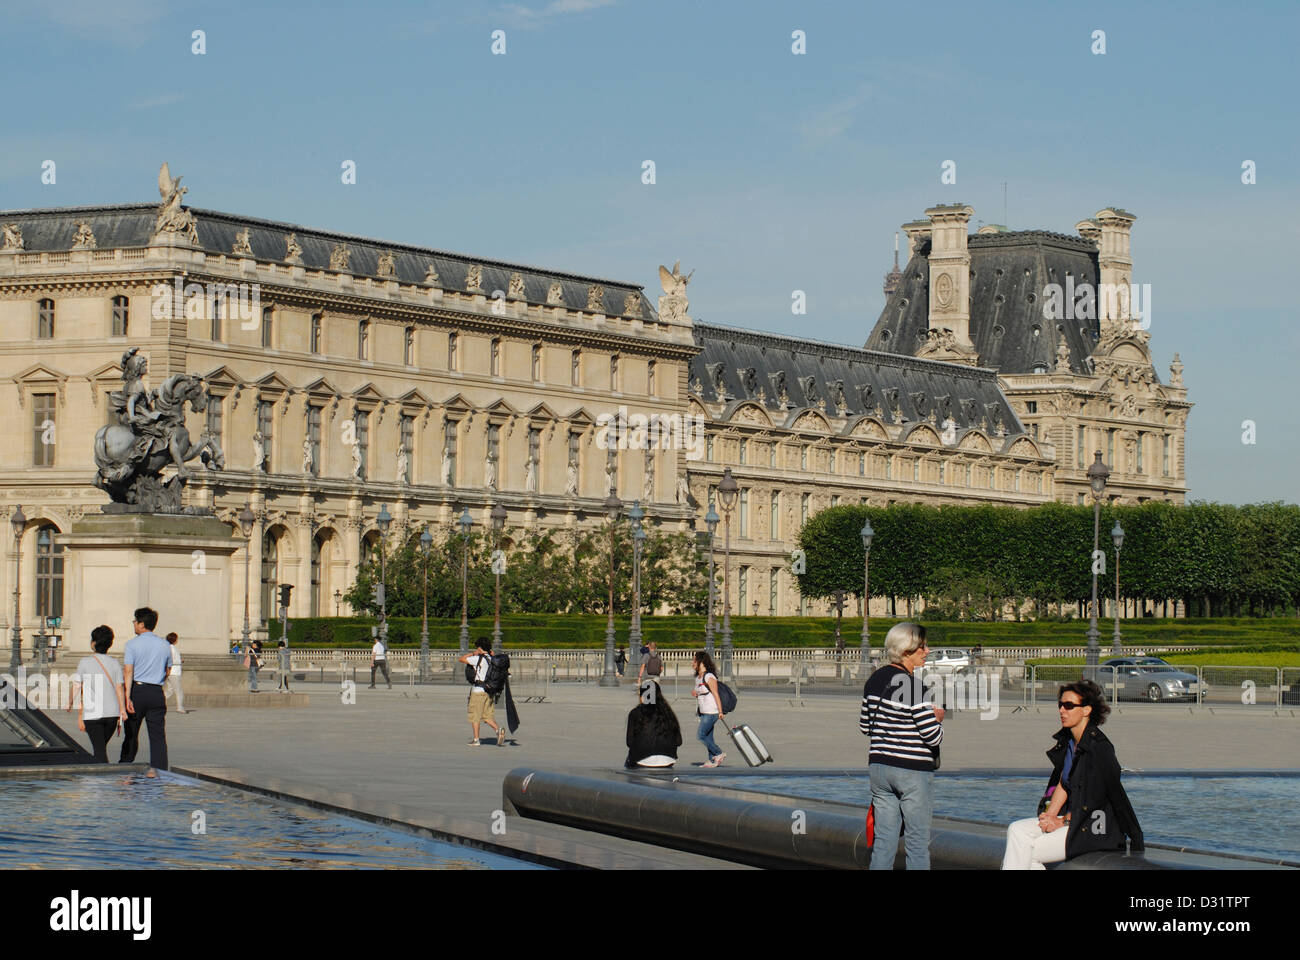 Partie du palais dans le complexe du Musée du Louvre, Paris, France. Banque D'Images